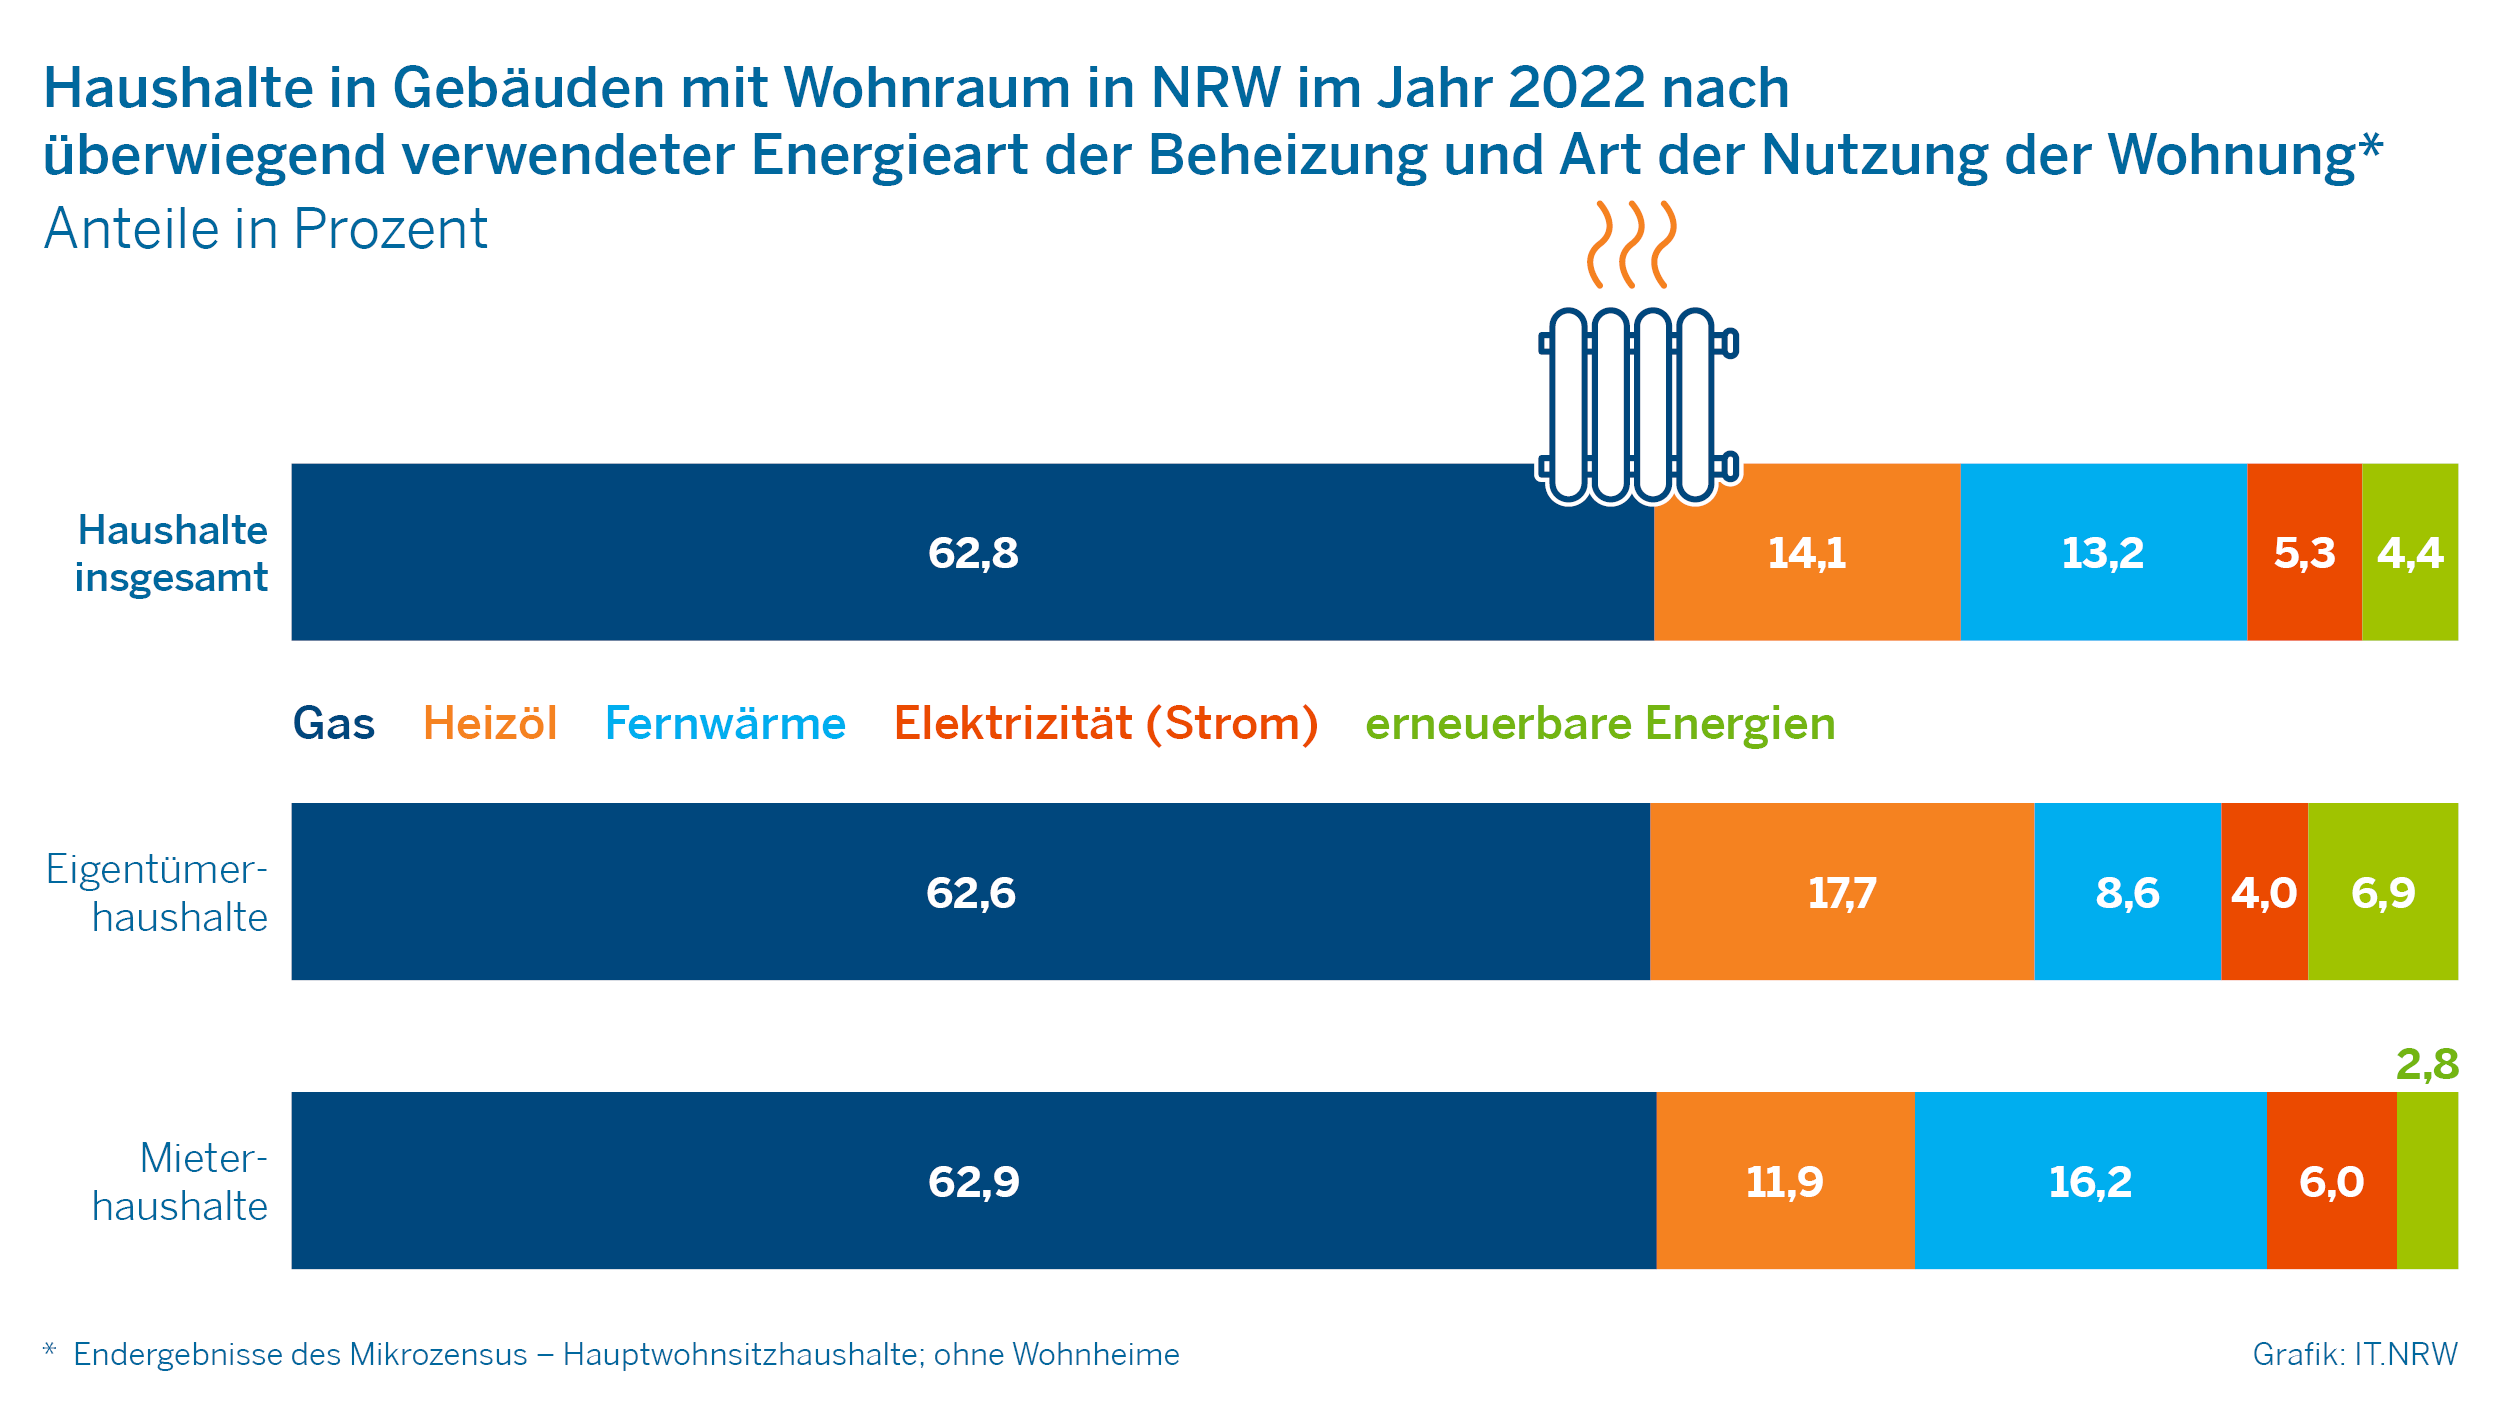 Haushalte in gebäuden mit Wohnraum in NRW im Jahr 2022 nach überwiegend verwendeter Energieart der Beheizung und Art der Nutzung der Wohnung